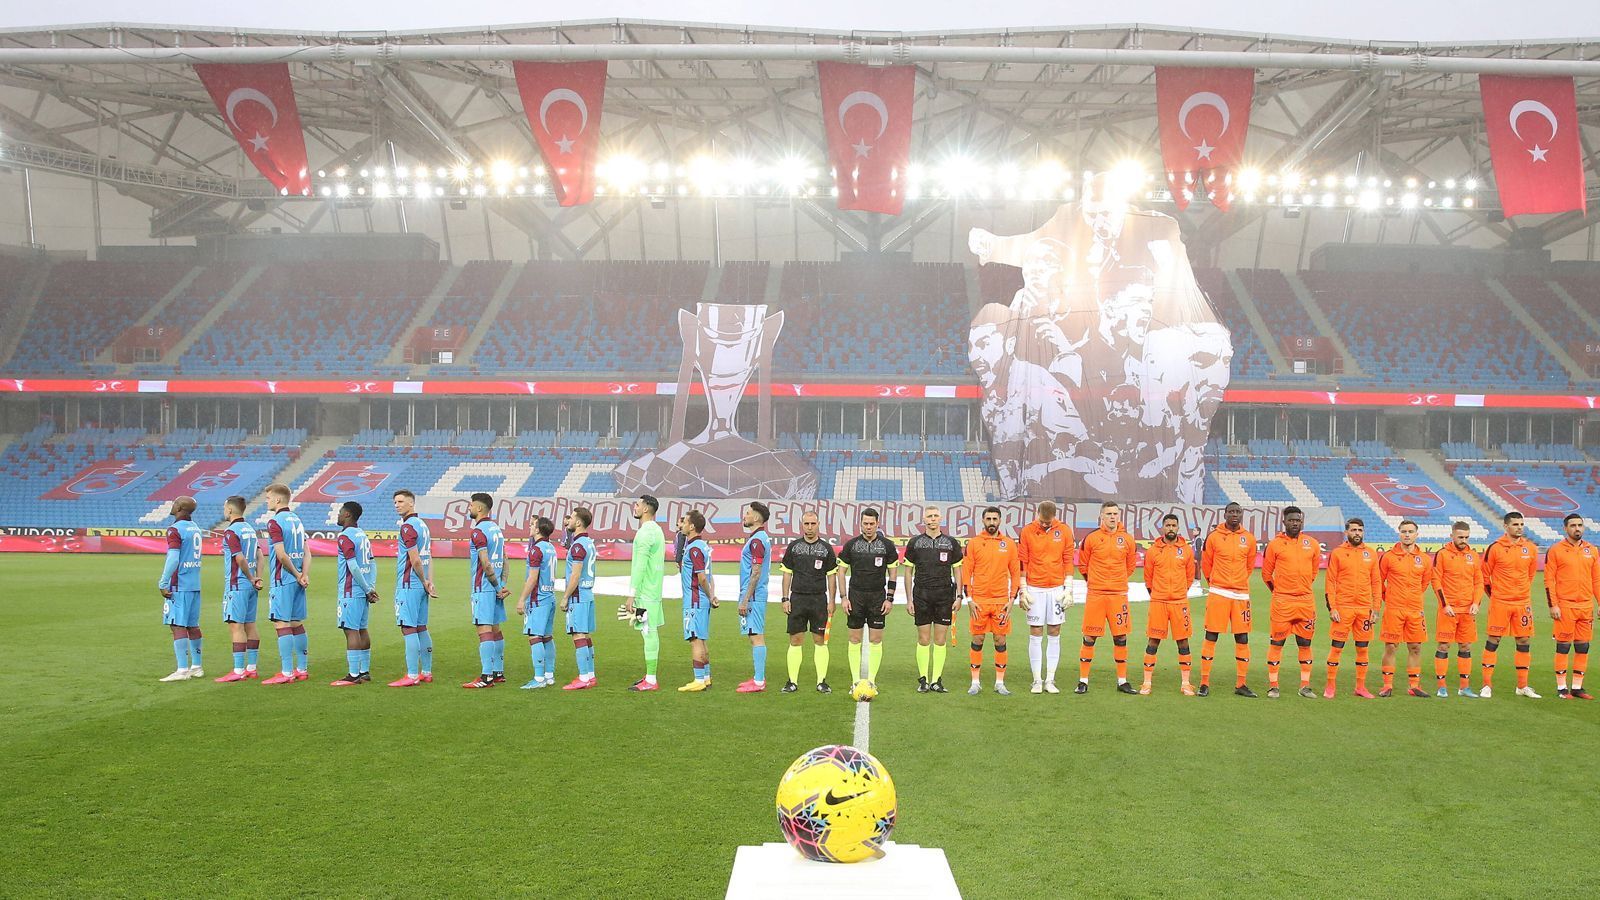 
                <strong>Süper Lig</strong><br>
                Richtig hoch her geht es im türkischen Titelrennen: Sieben Spieltage vor Schluss haben noch vier Teams Chancen auf die Meisterschaft. An der Spitze steht Trabzonspor punktgleich mit Istanbul Basaksehir (beide im Bild). Sivasspor, das im Saisonverlauf lange an der Spitze stand, folgt vier Zähler dahinter. Galatasaray als Vierter hat sechs Punkte Rückstand auf die Spitze, kann also durchaus noch in den Titelkampf eingreifen.
              